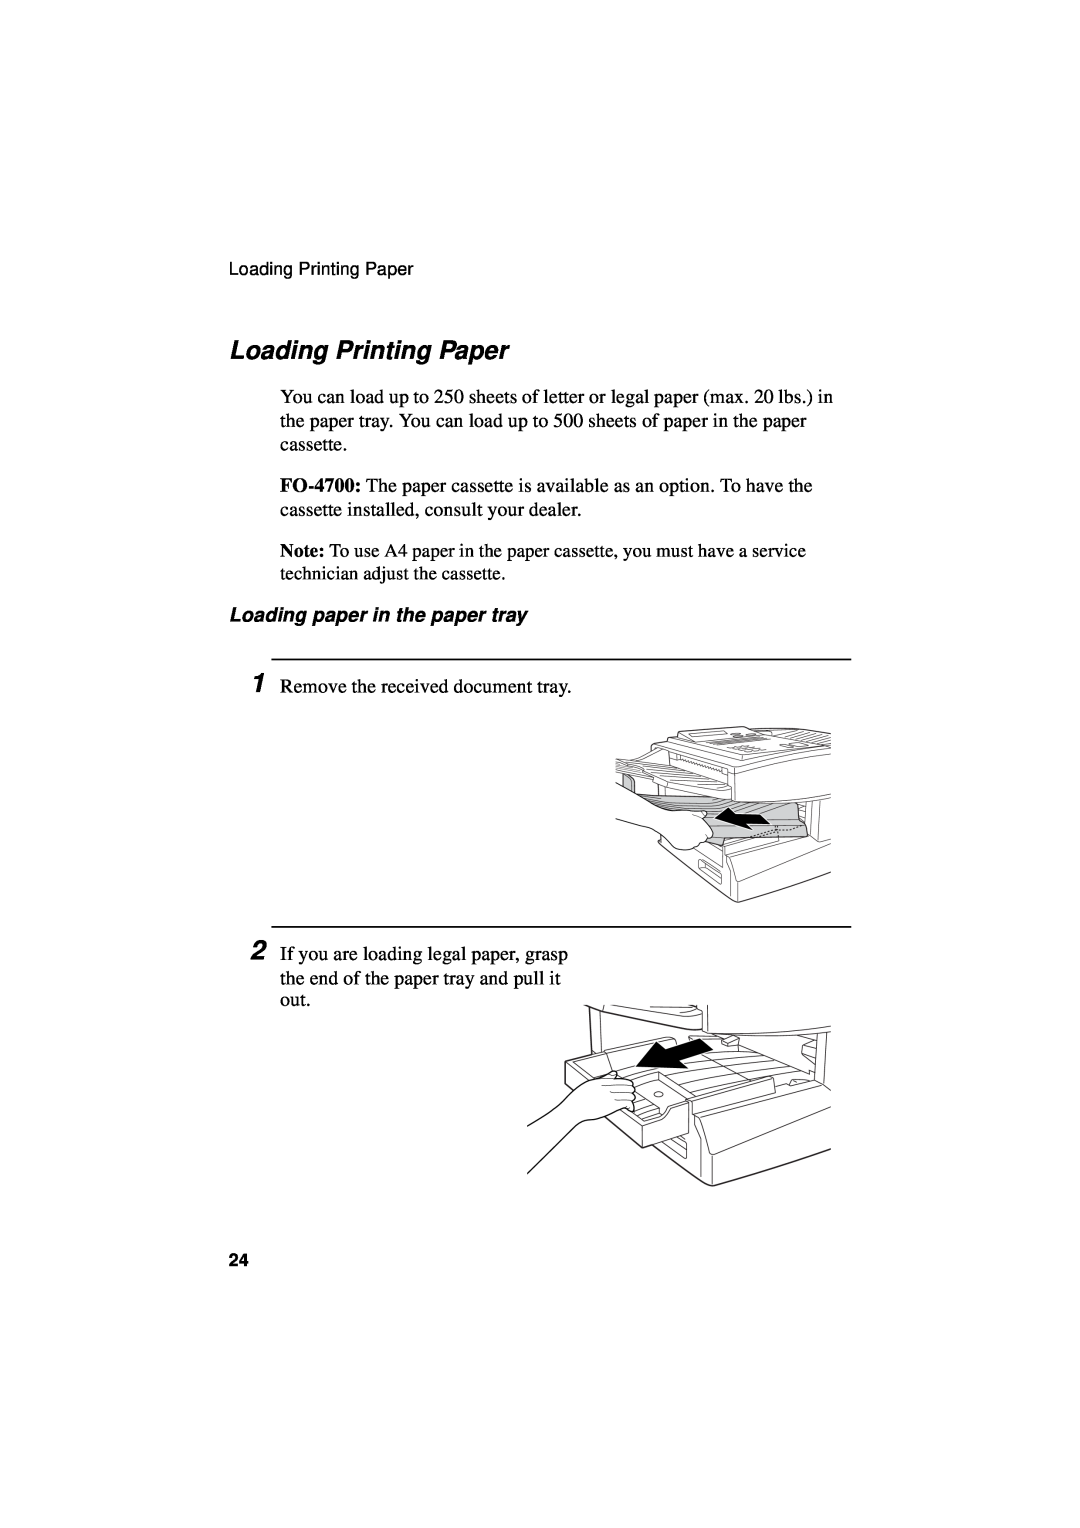 Sharp FO-5550, FO-5700, FO-4700 operation manual Loading Printing Paper, Loading paper in the paper tray 